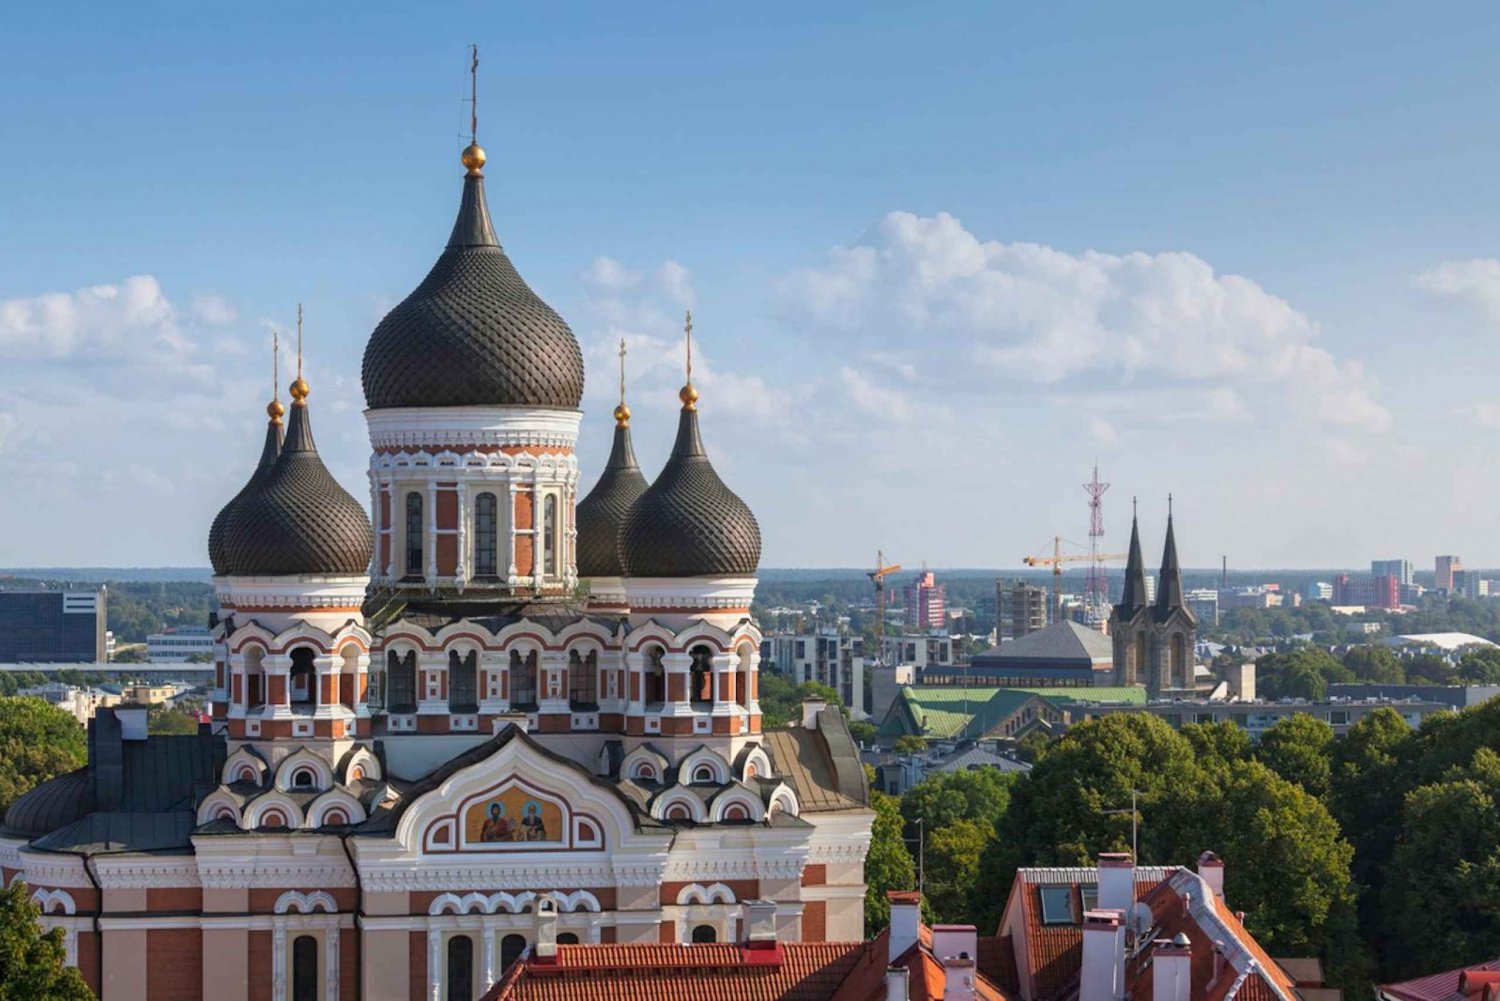 Vanuit Helsinki: Tallinn met retourveerboot en rondleiding